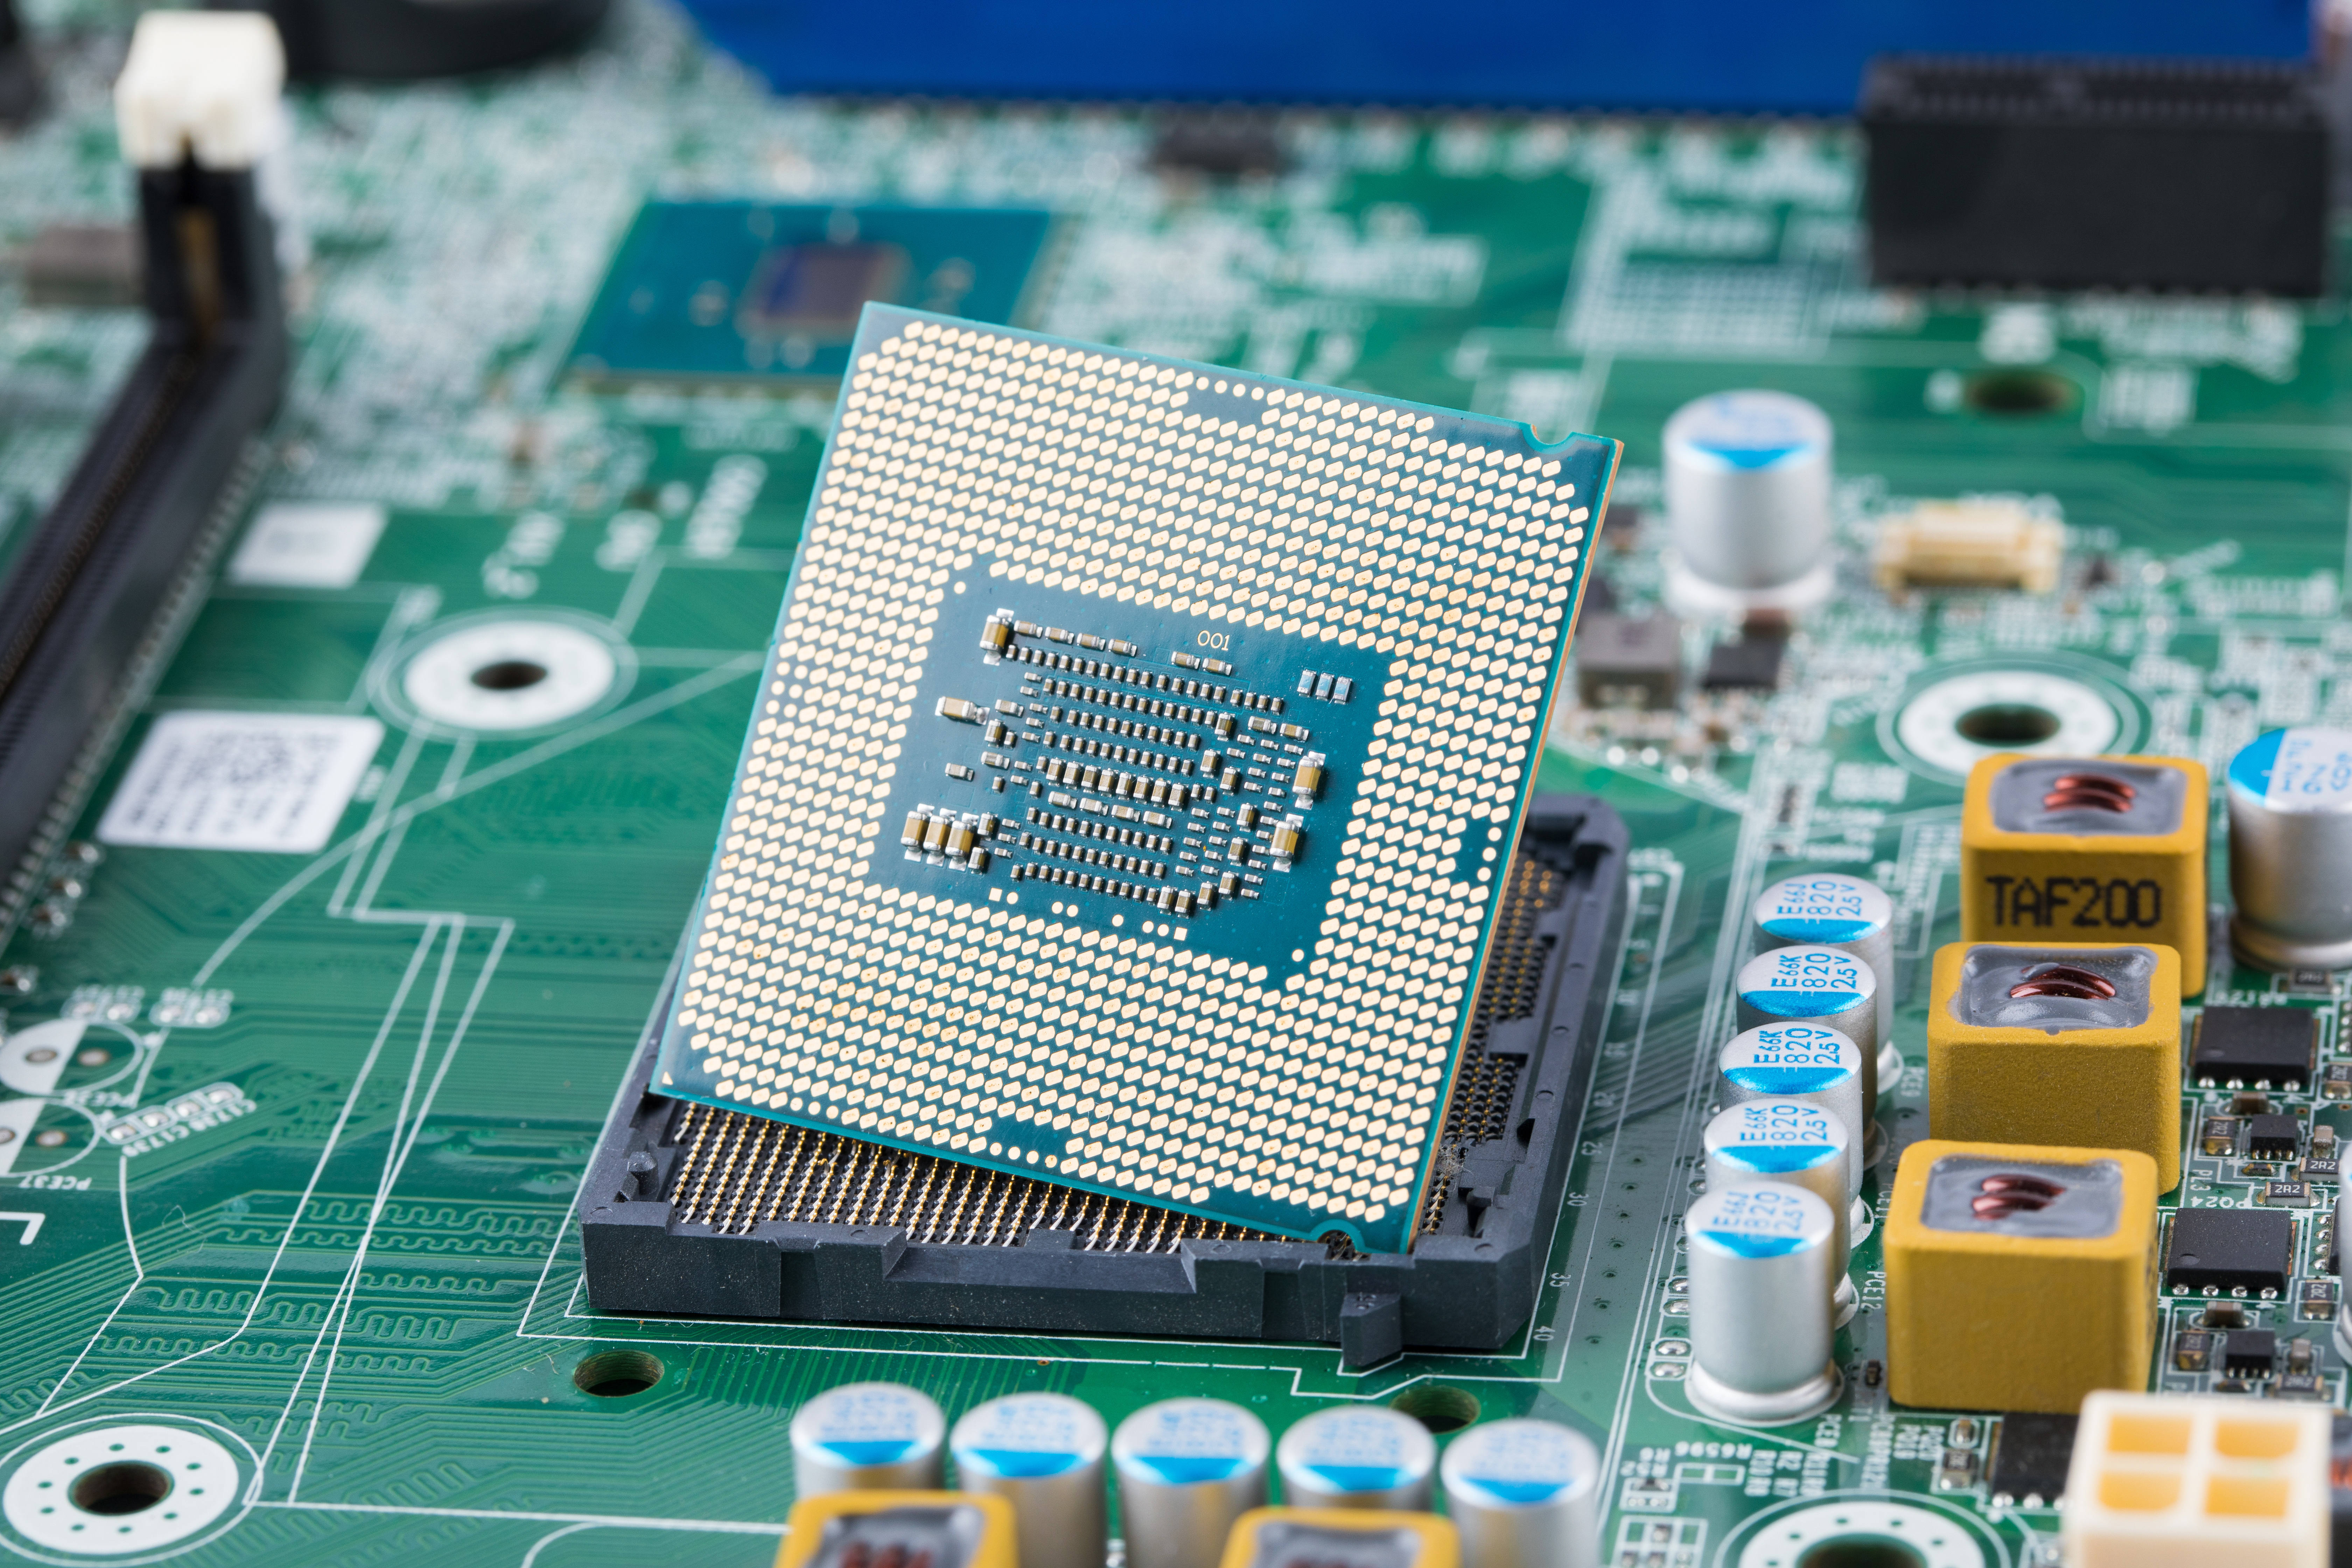 格科微16M的单芯片产品即将小批量量产